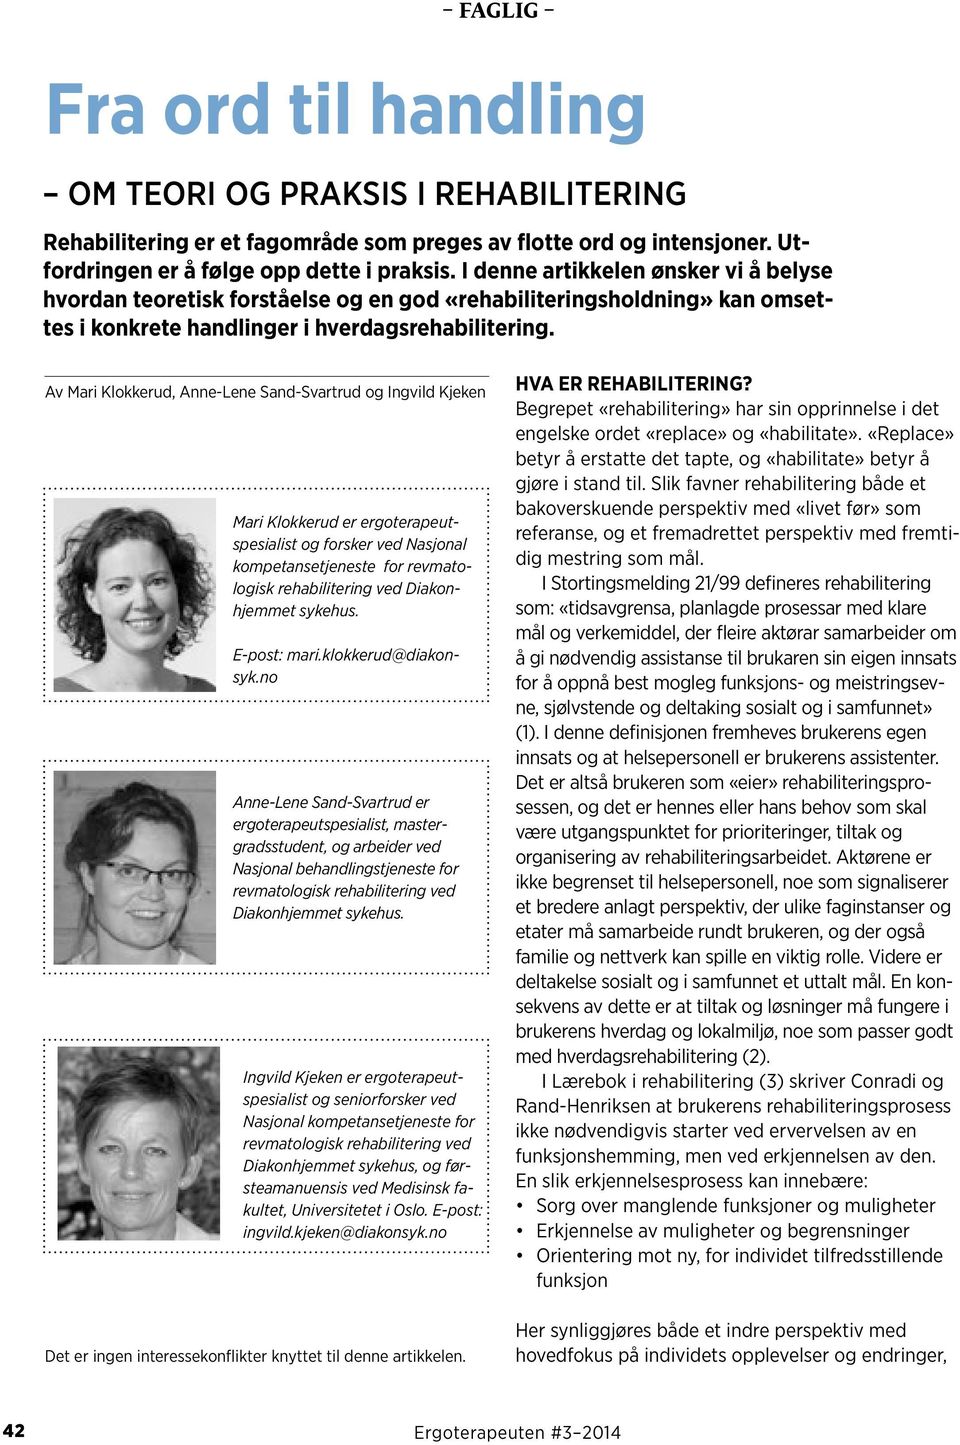 Av Mari Klokkerud, Anne-Lene Sand-Svartrud og Ingvild Kjeken Mari Klokkerud er ergoterapeutspesialist og forsker ved Nasjonal kompetansetjeneste for revmatologisk rehabilitering ved Diakonhjemmet